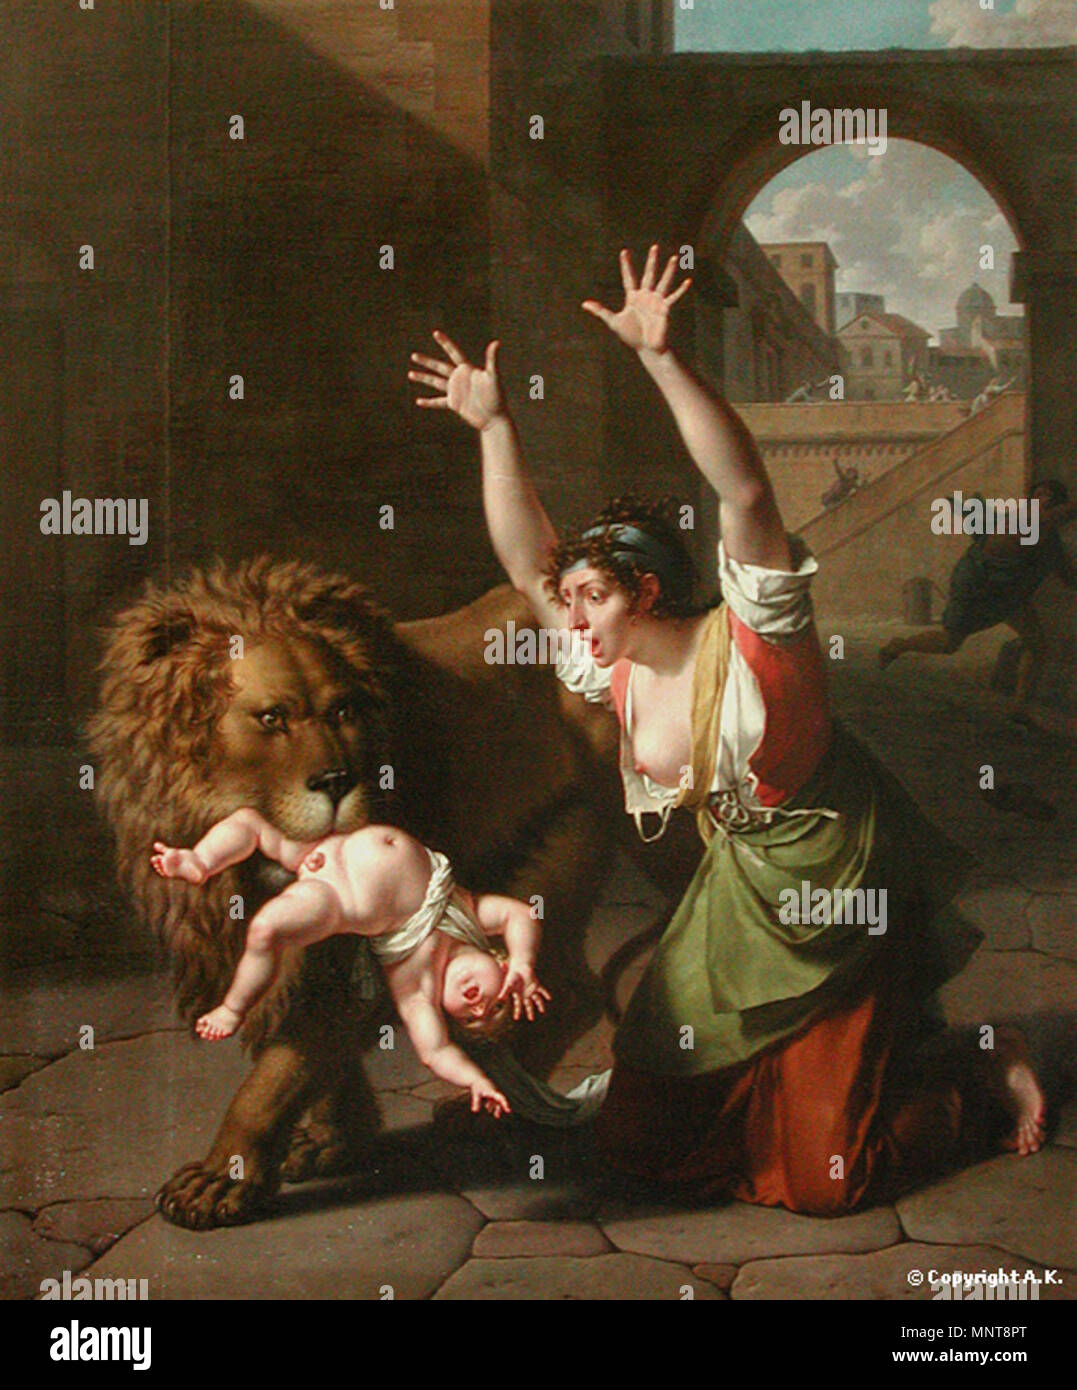 903 Monsiau, Nicolas-André - Le Lion de Florence - 1801 Stock Photo